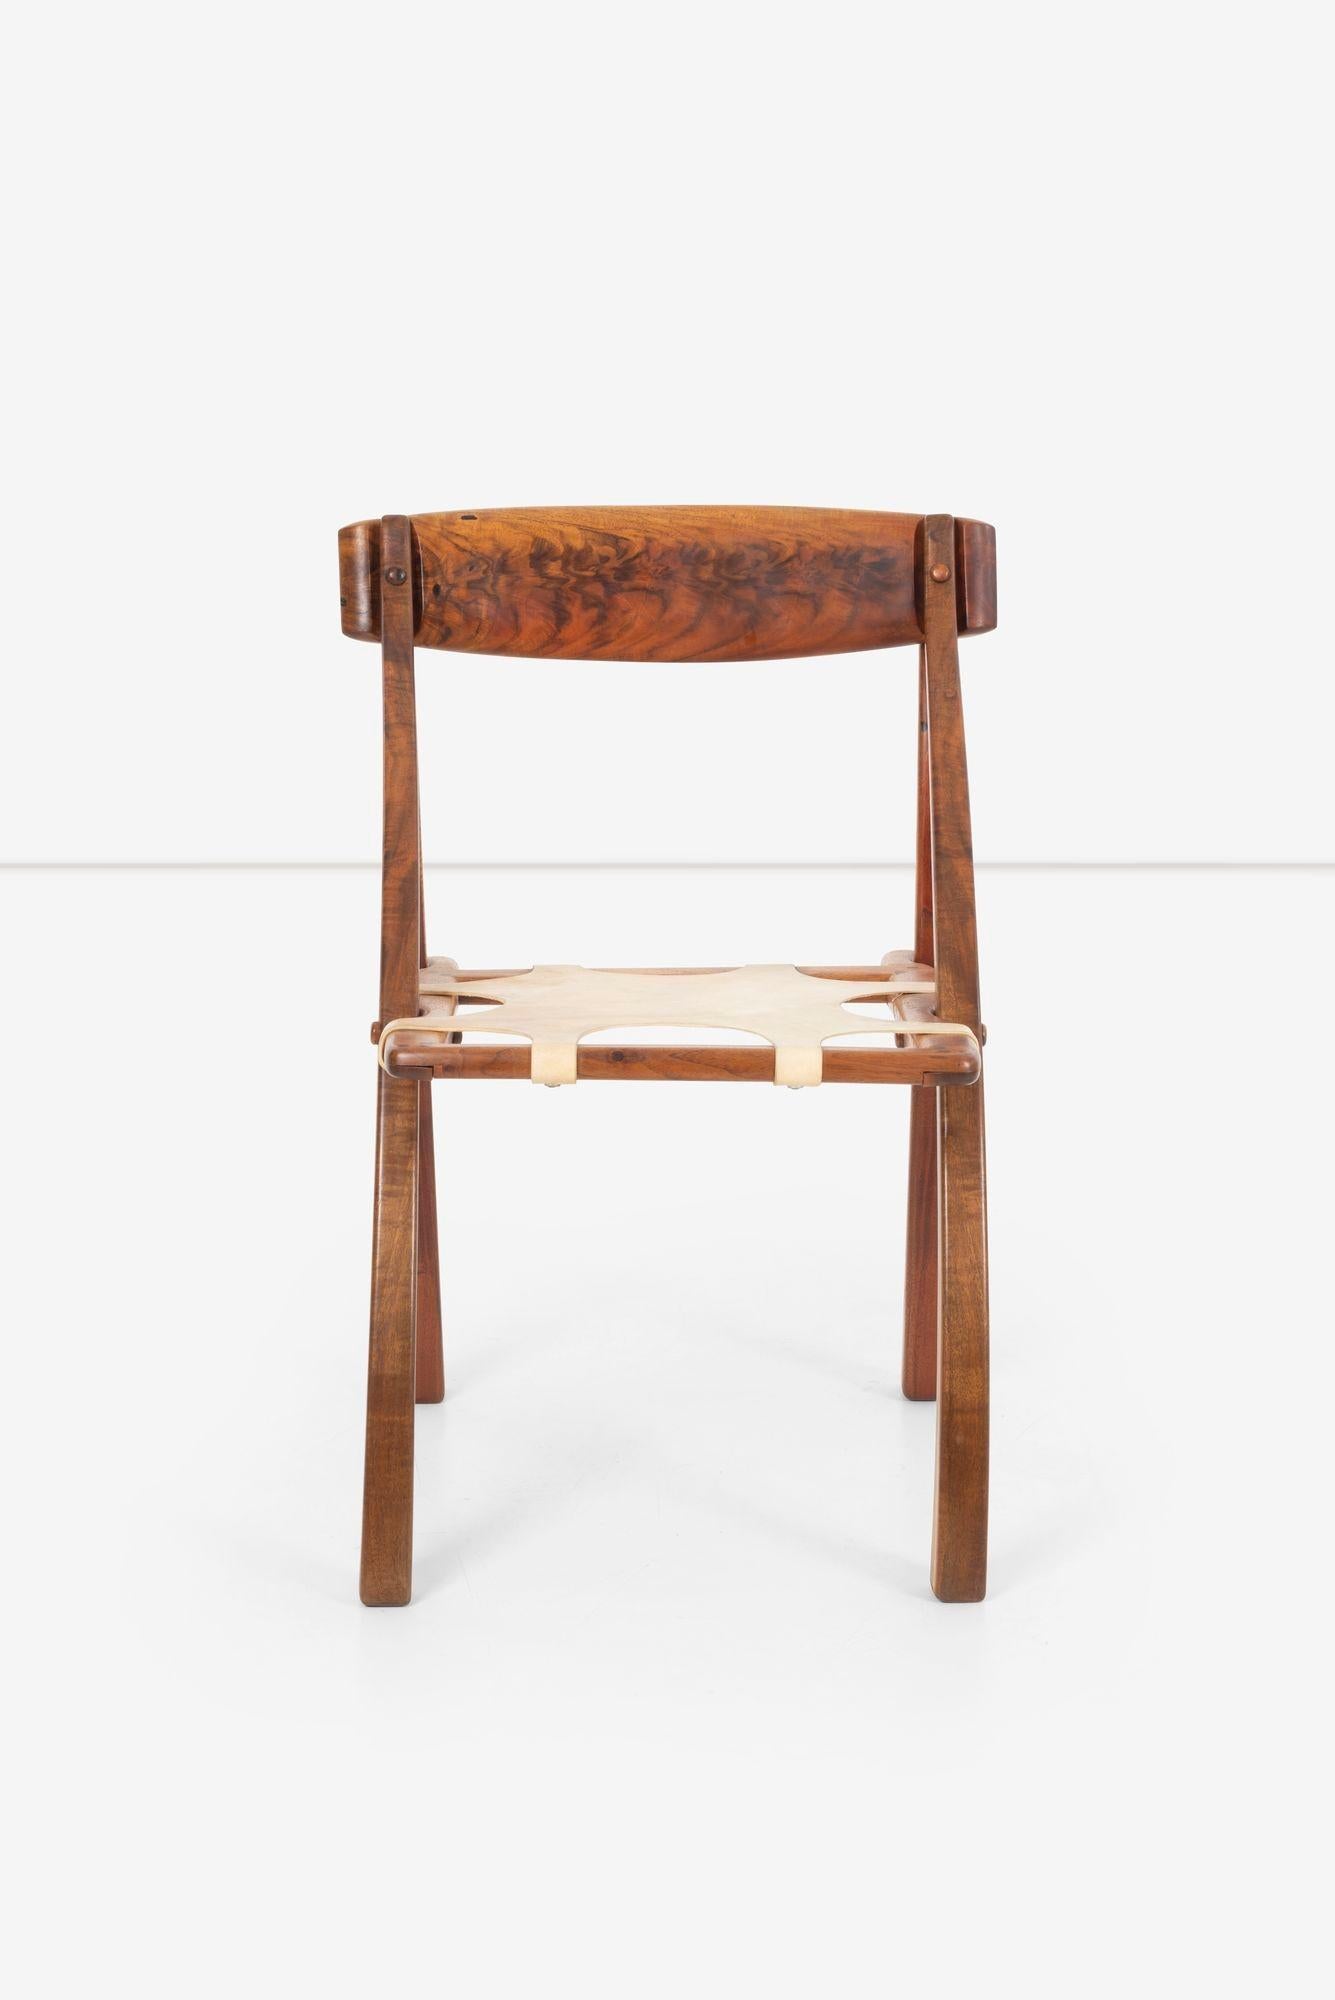 Arthur Espenet Carpenter Wishbone Chair, Gestell aus Nussbaum mit Sitz aus Vellum Sling.
Eingeschnitzte Signatur und Nummer auf der Unterseite des Stuhls 